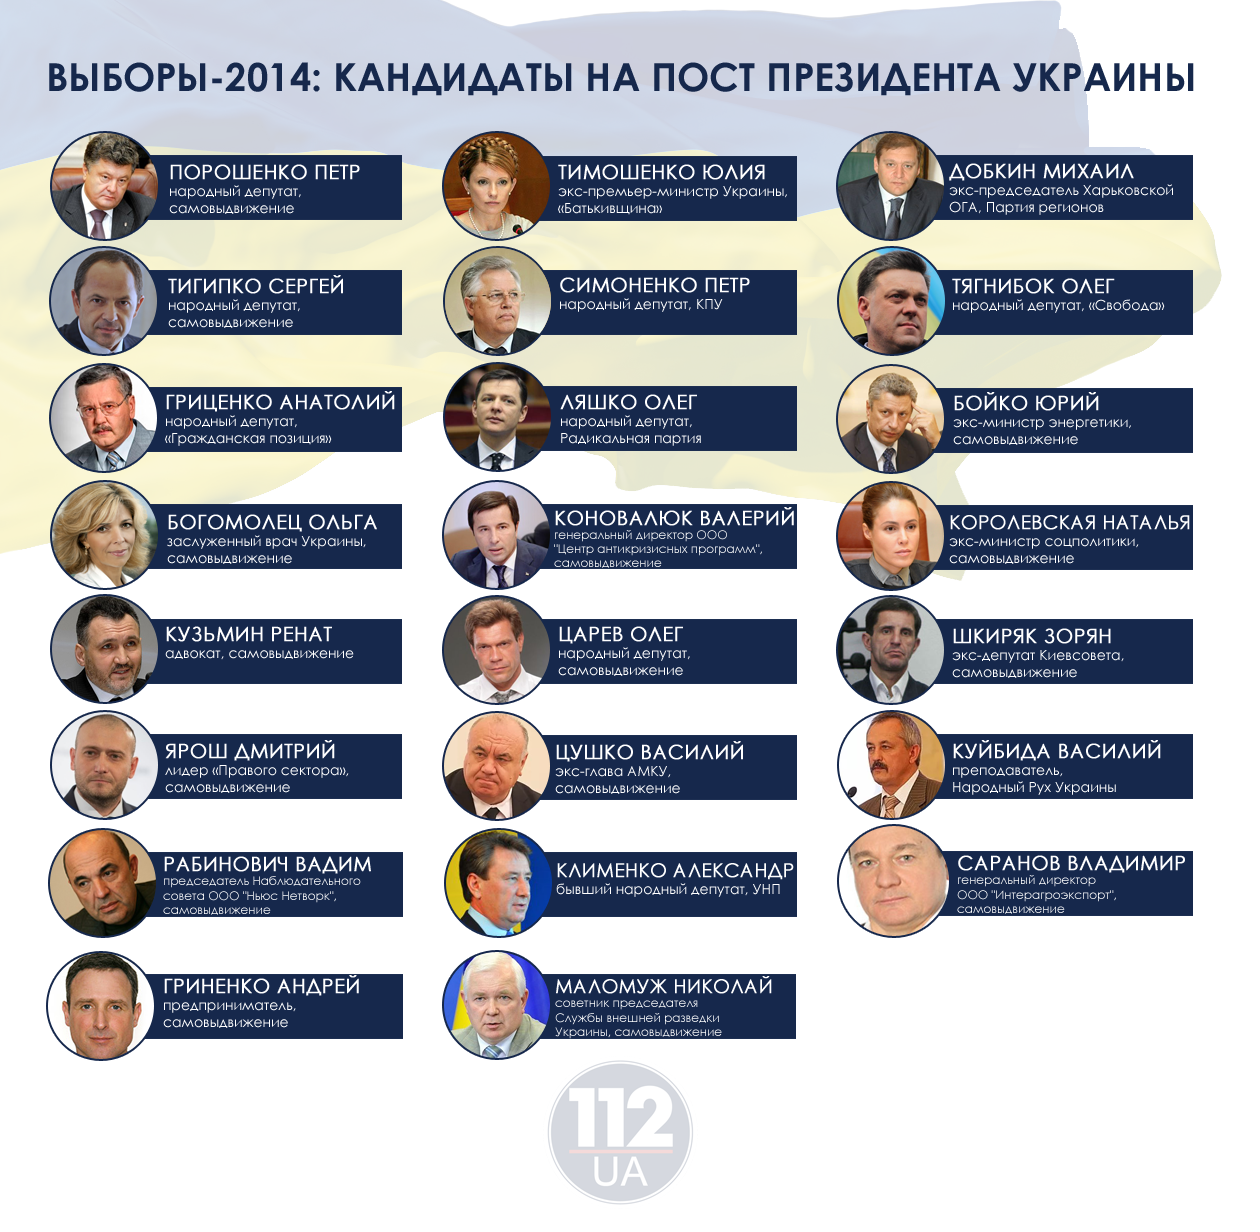 Претендент украины. Кандидаты на пост президента Украины 2014.